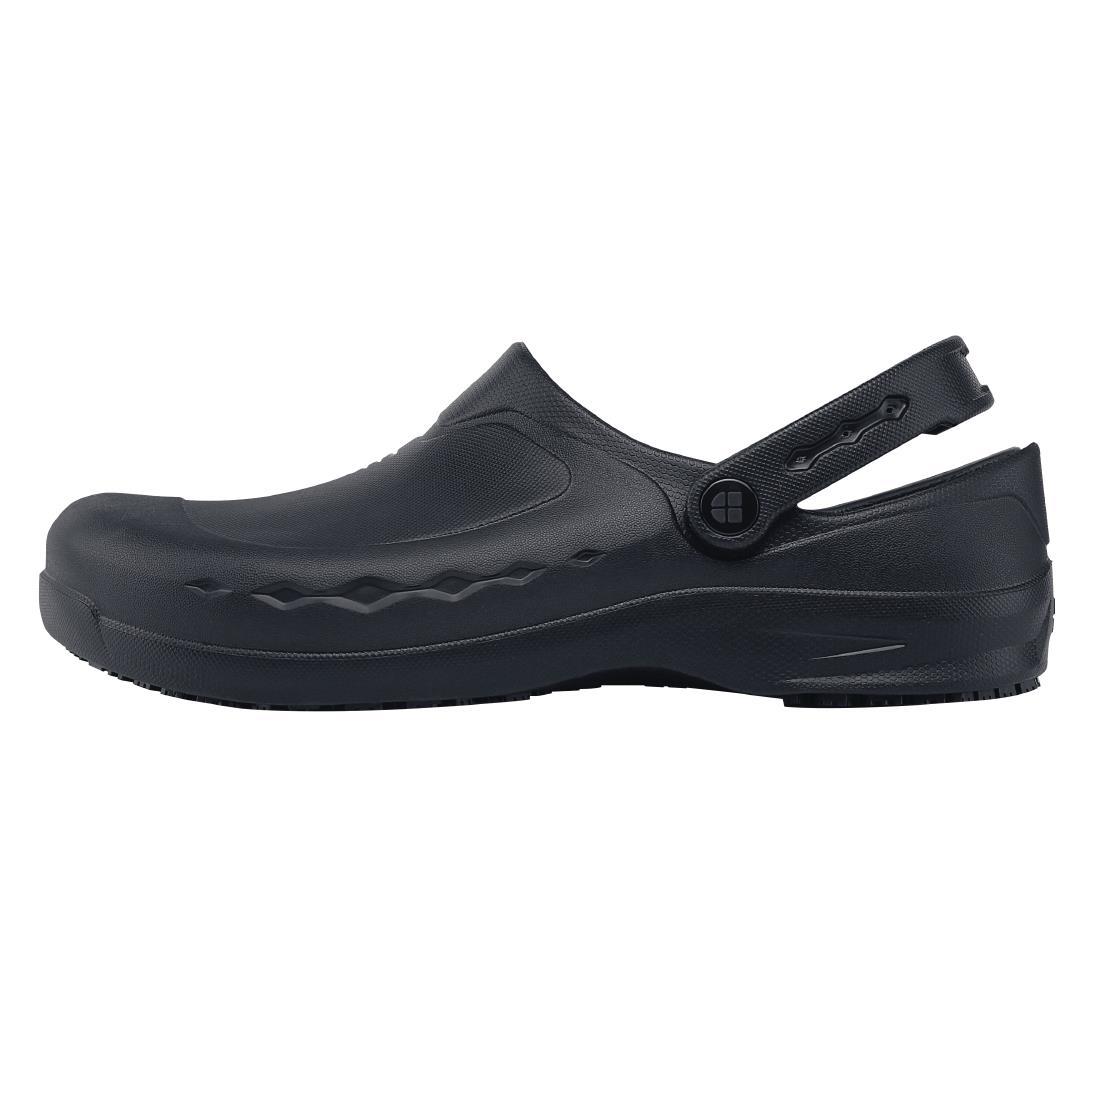 Shoes for Crews Zinc Clogs Black Size 43 - BB569-43  - 1